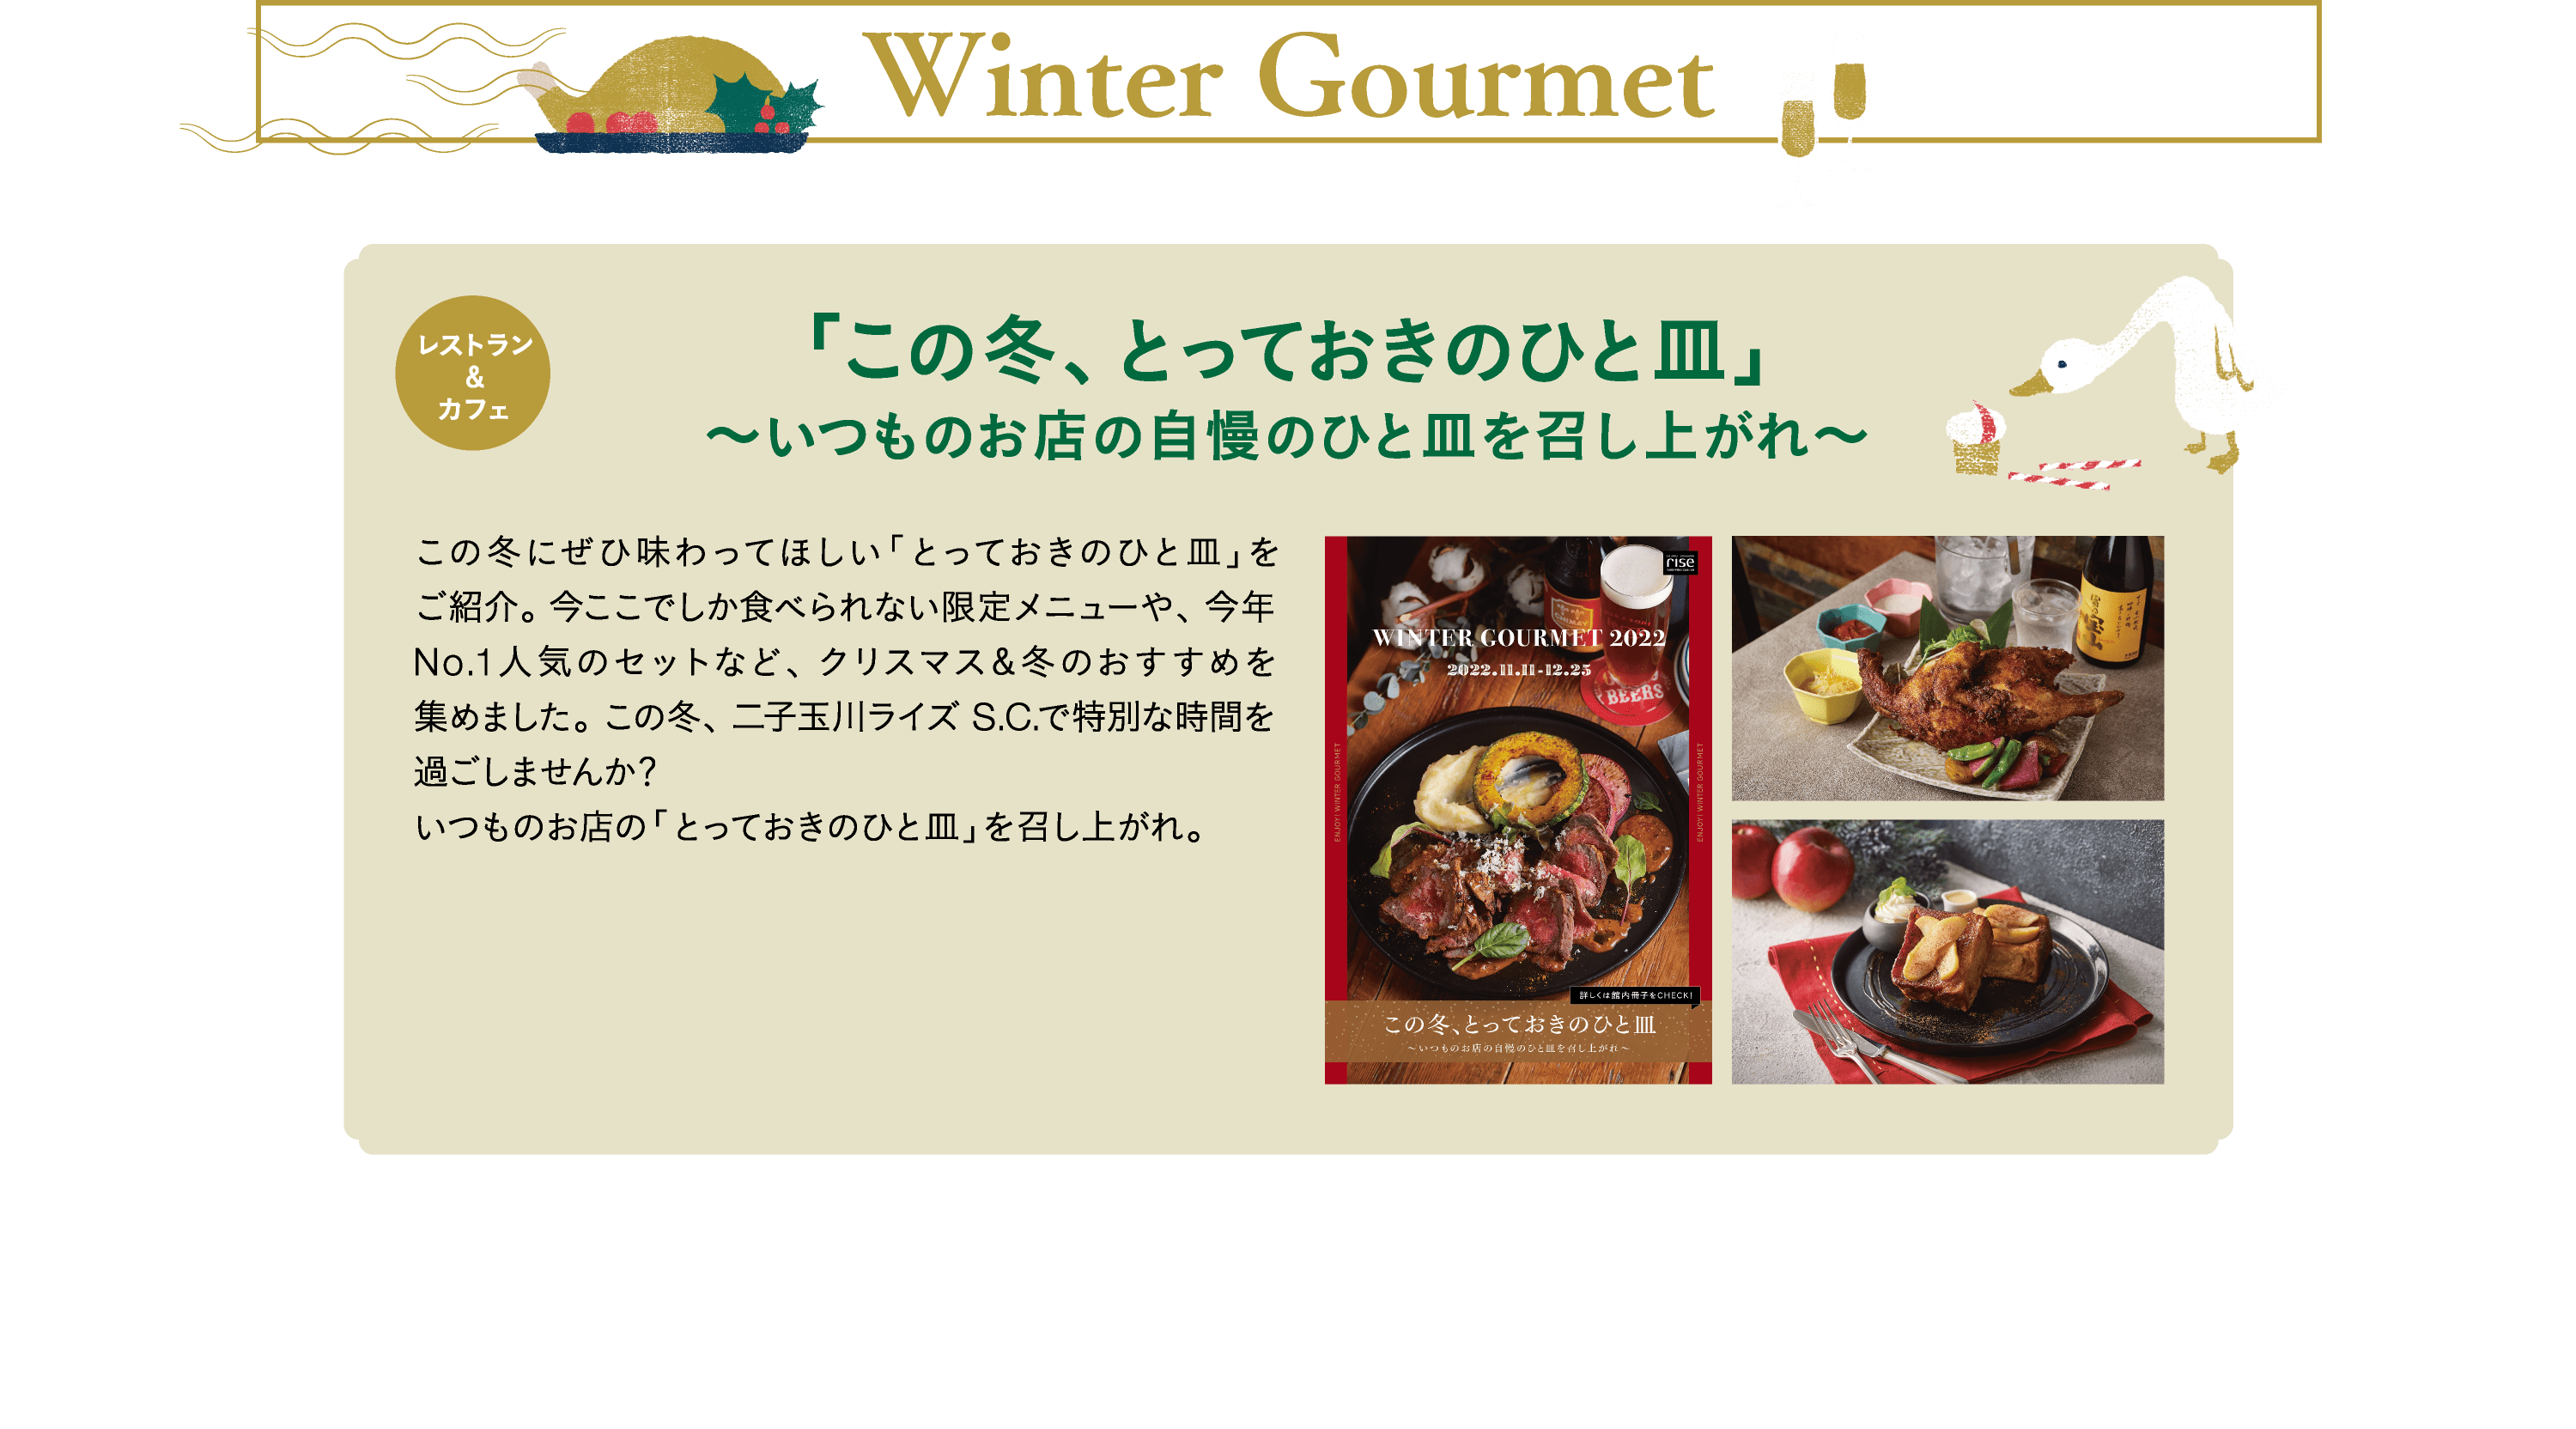 Winter Gourmet